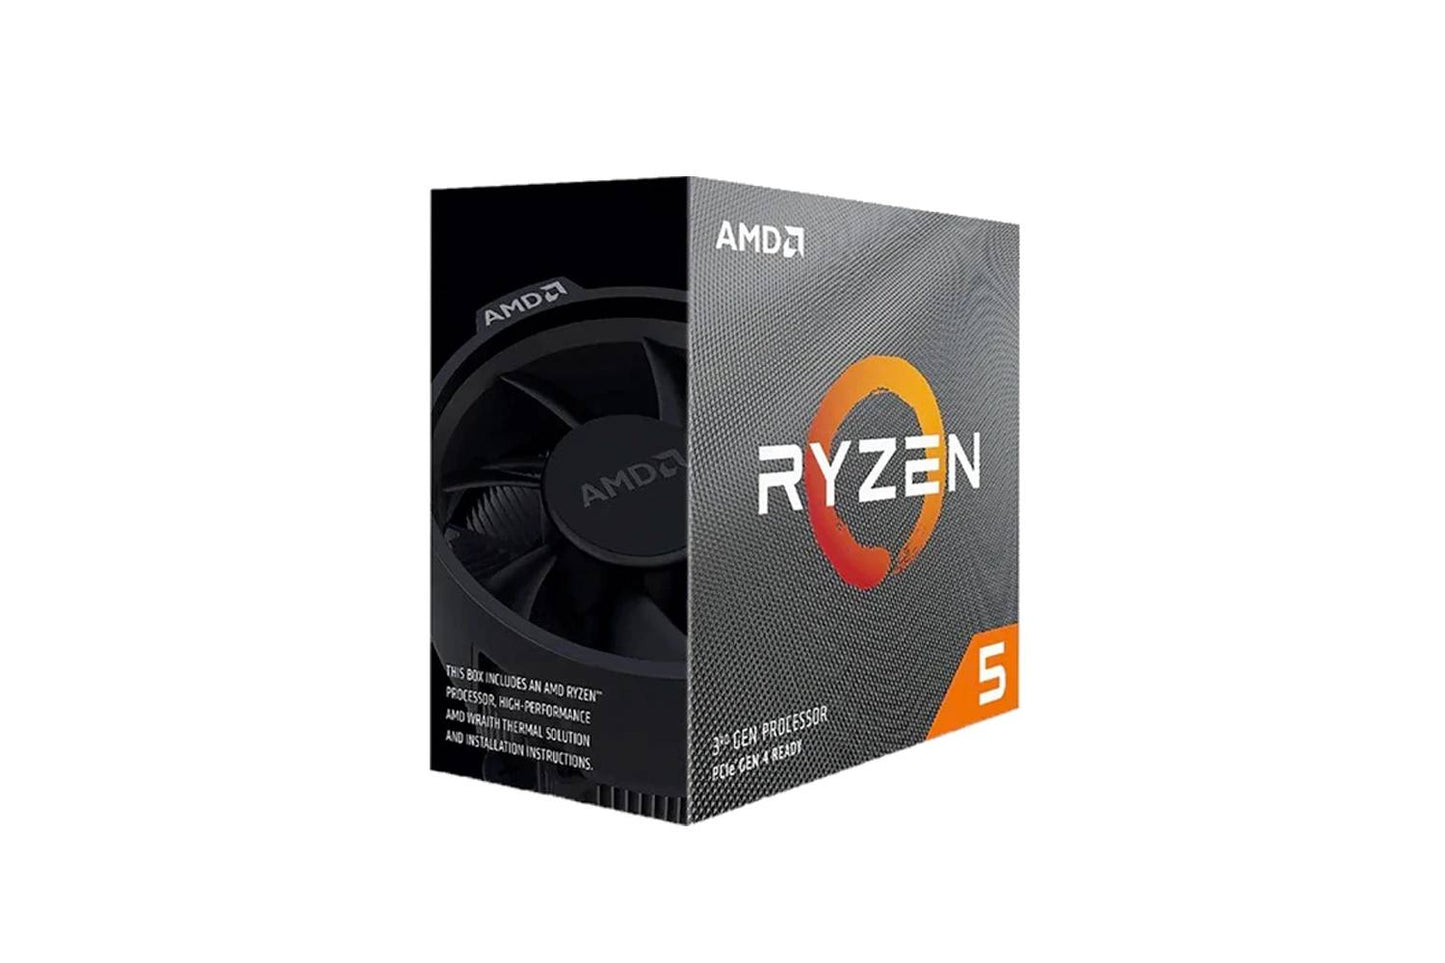 AMD Ryzen™ 5 3600x CPU